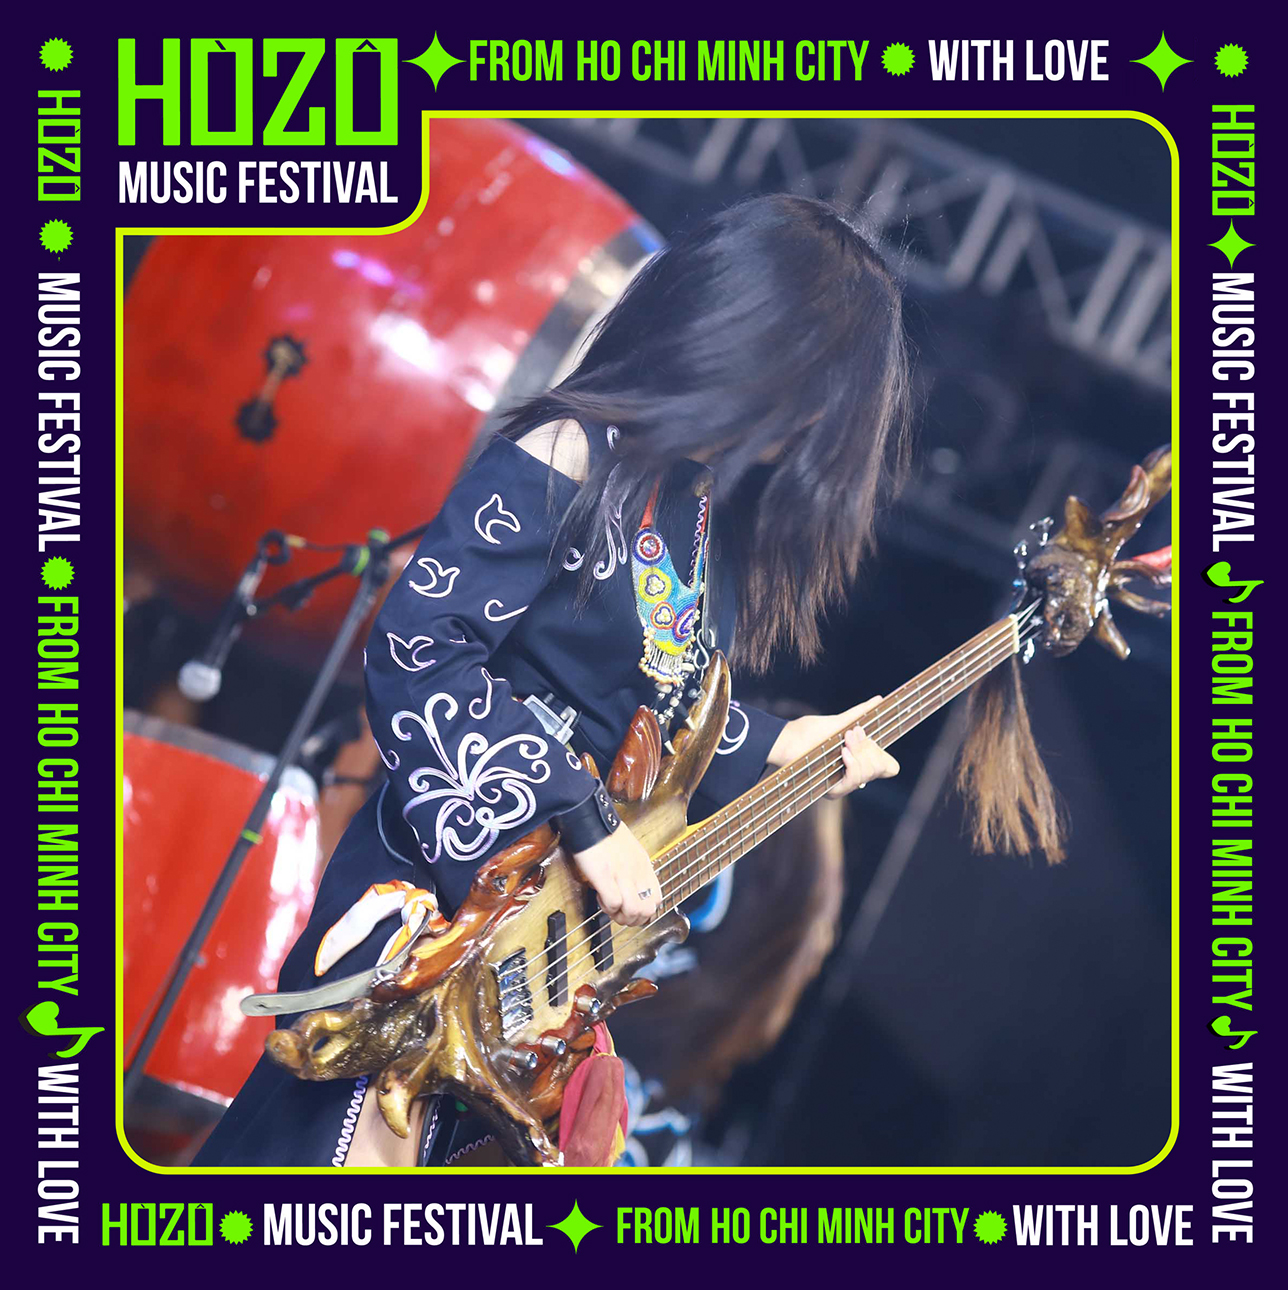 HOZO 2023 - khi âm nhạc, tình yêu và những trải nghiệm của “Hệ sinh thái lễ hội” khó quên cùng “bắt tay” chinh phục 200 nghìn khán giả - Ảnh 3.